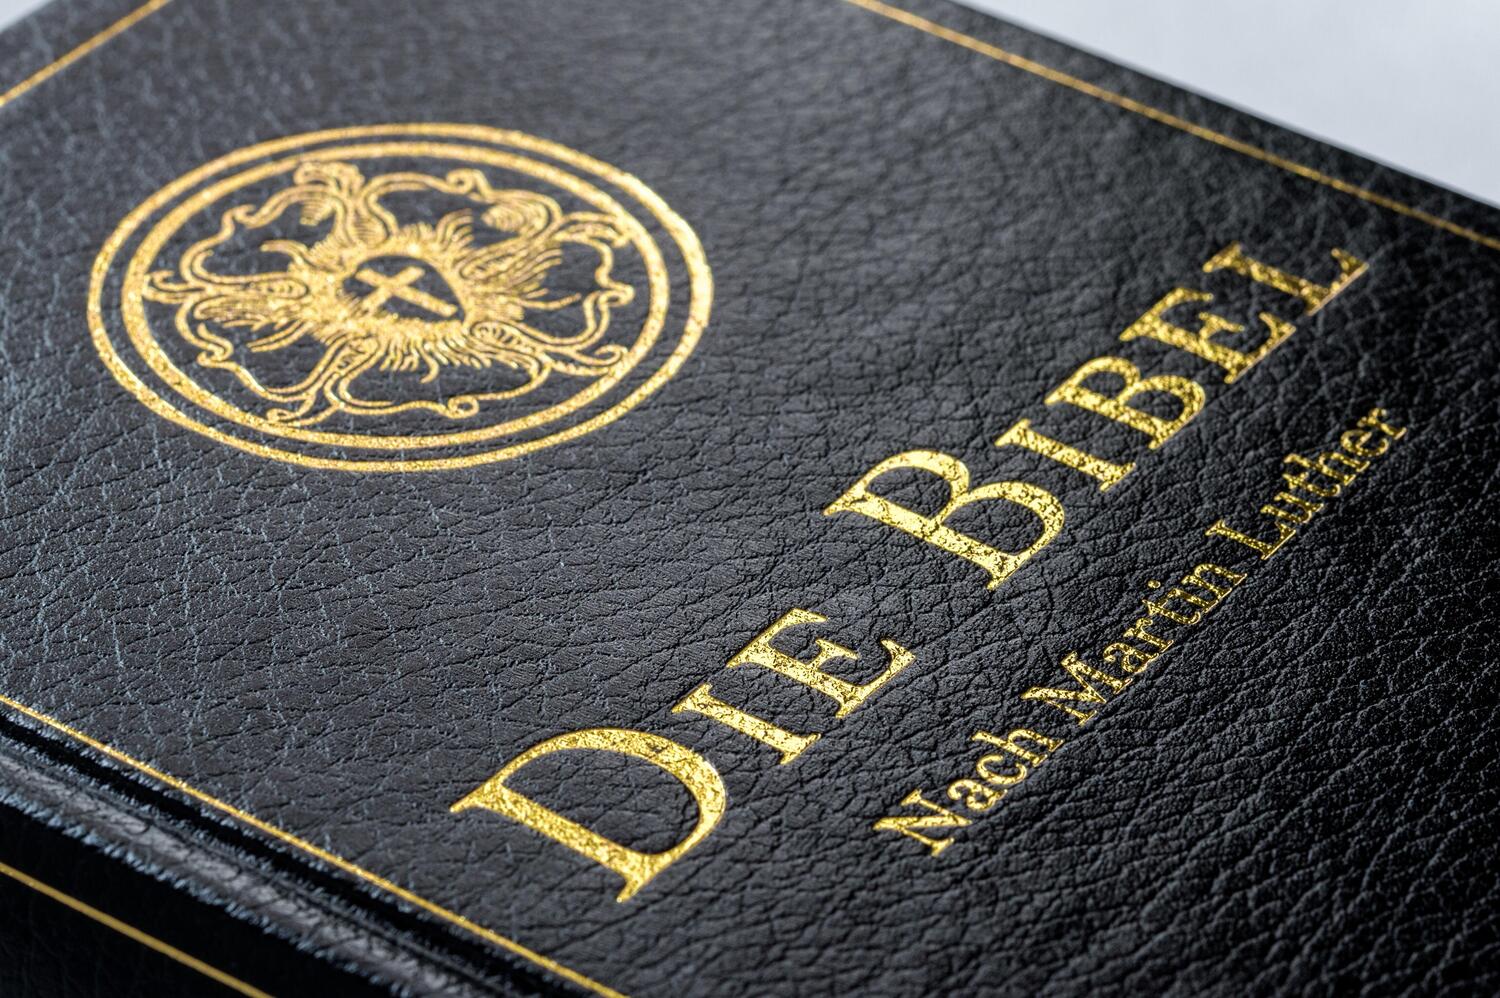 Bild: 9783730613924 | Die Bibel - Altes und Neues Testament | Martin Luther | Buch | 1248 S.